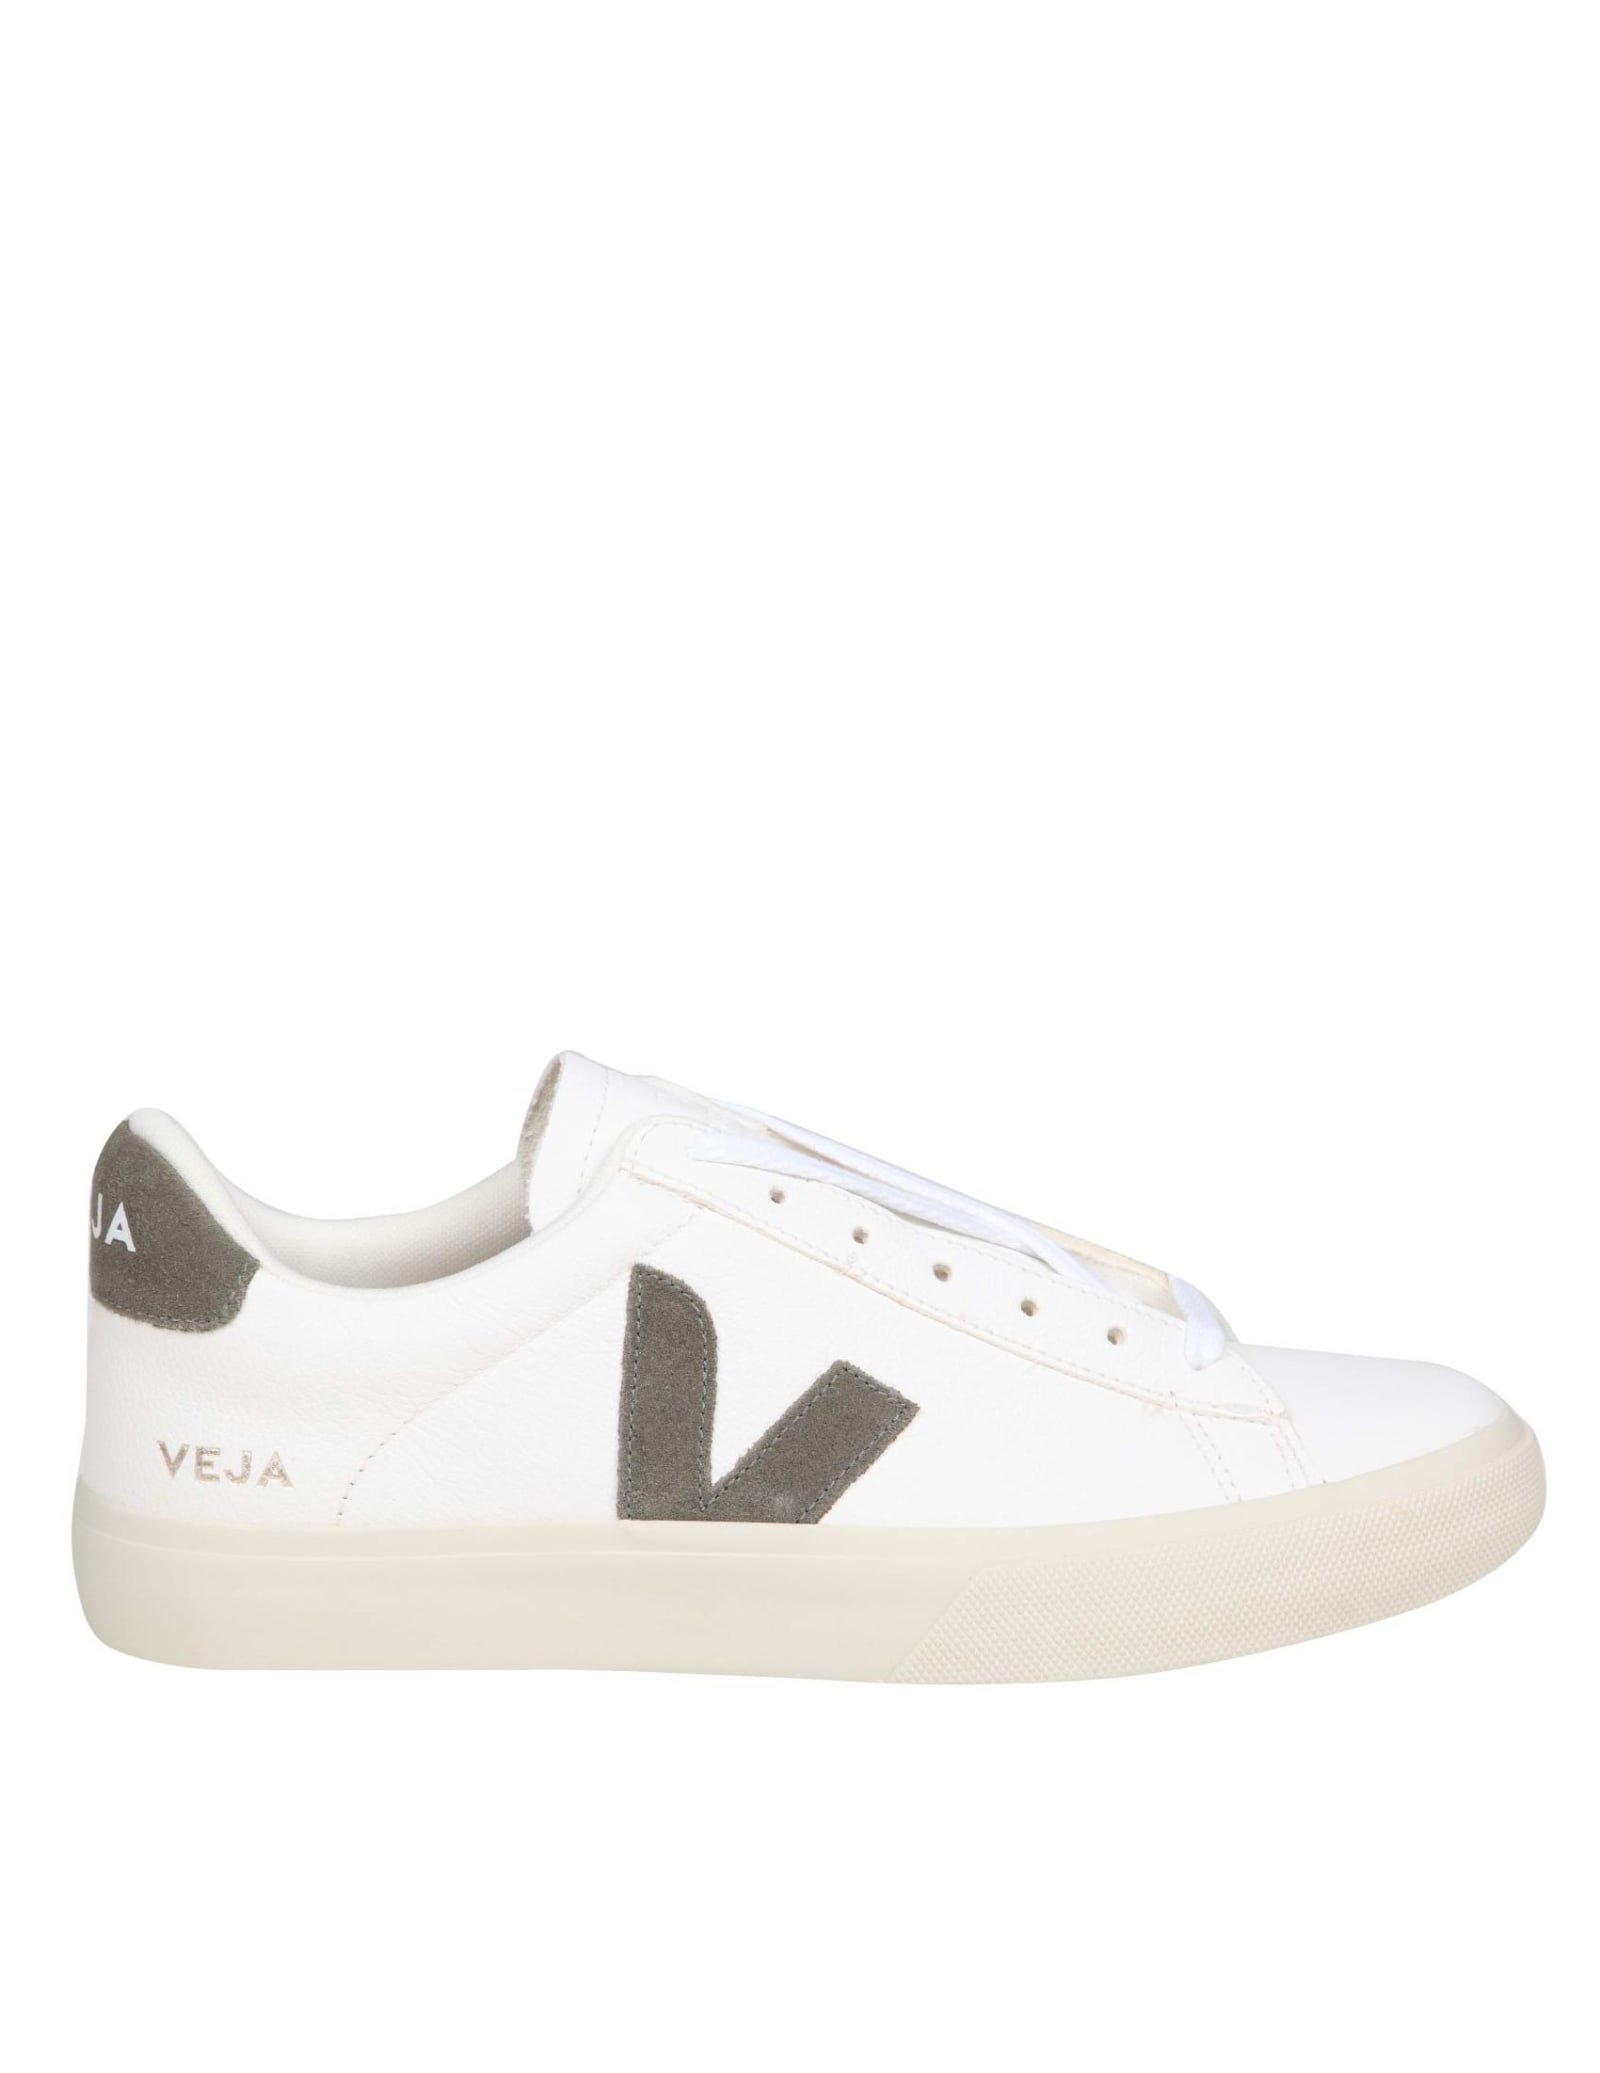 Shop Veja Campo Chromefree In White/khaki Leather In Kaki